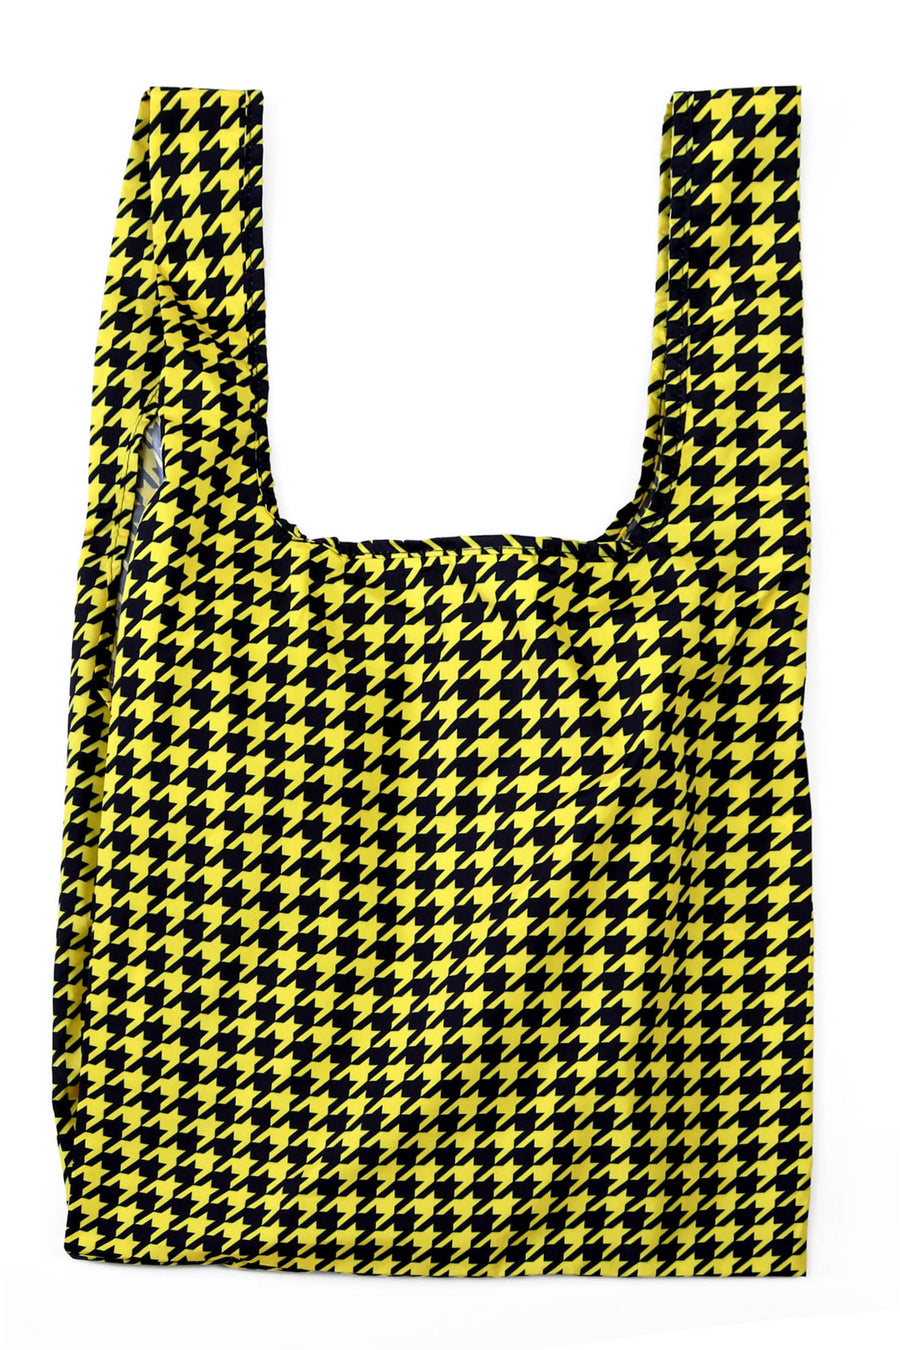 Kind Bag Dogtooth Yellow and Black Medium Reusable Bag Flatlay